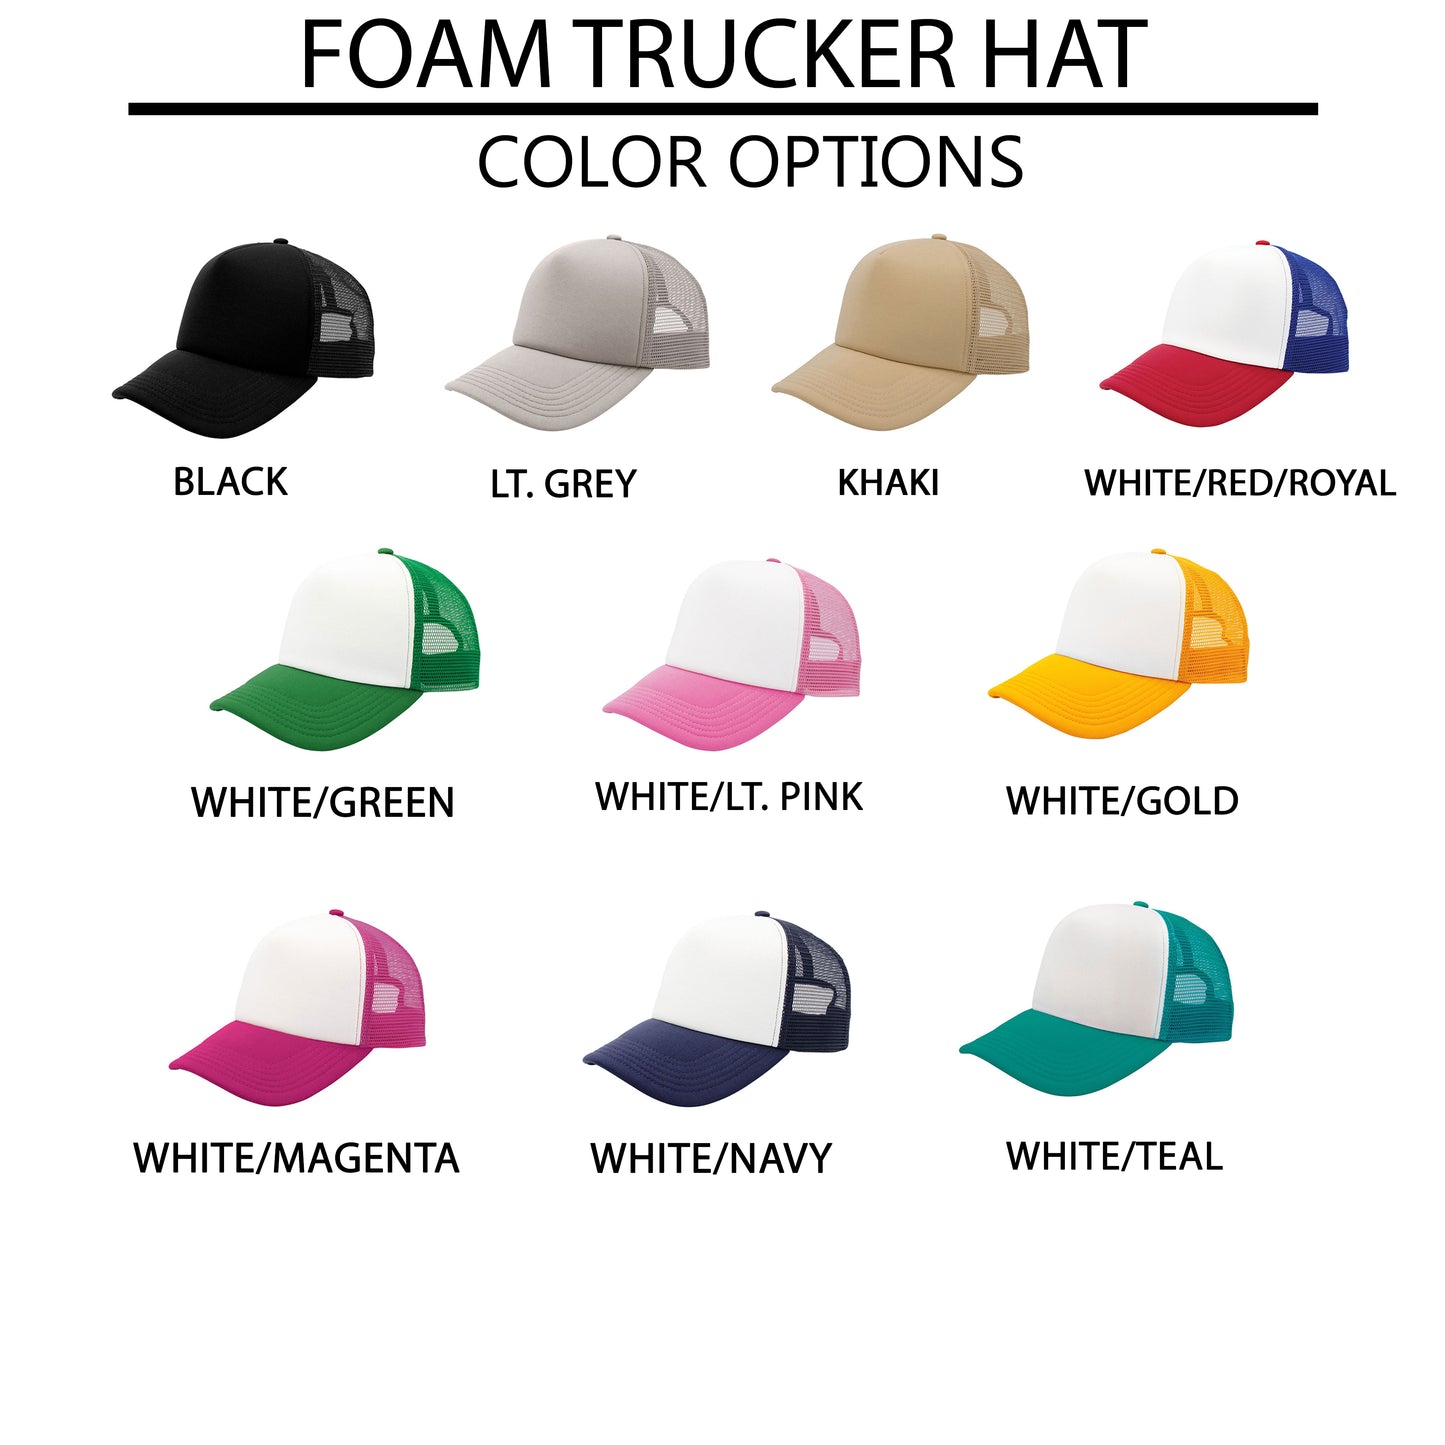 Raising Believers | Foam Trucker Hat